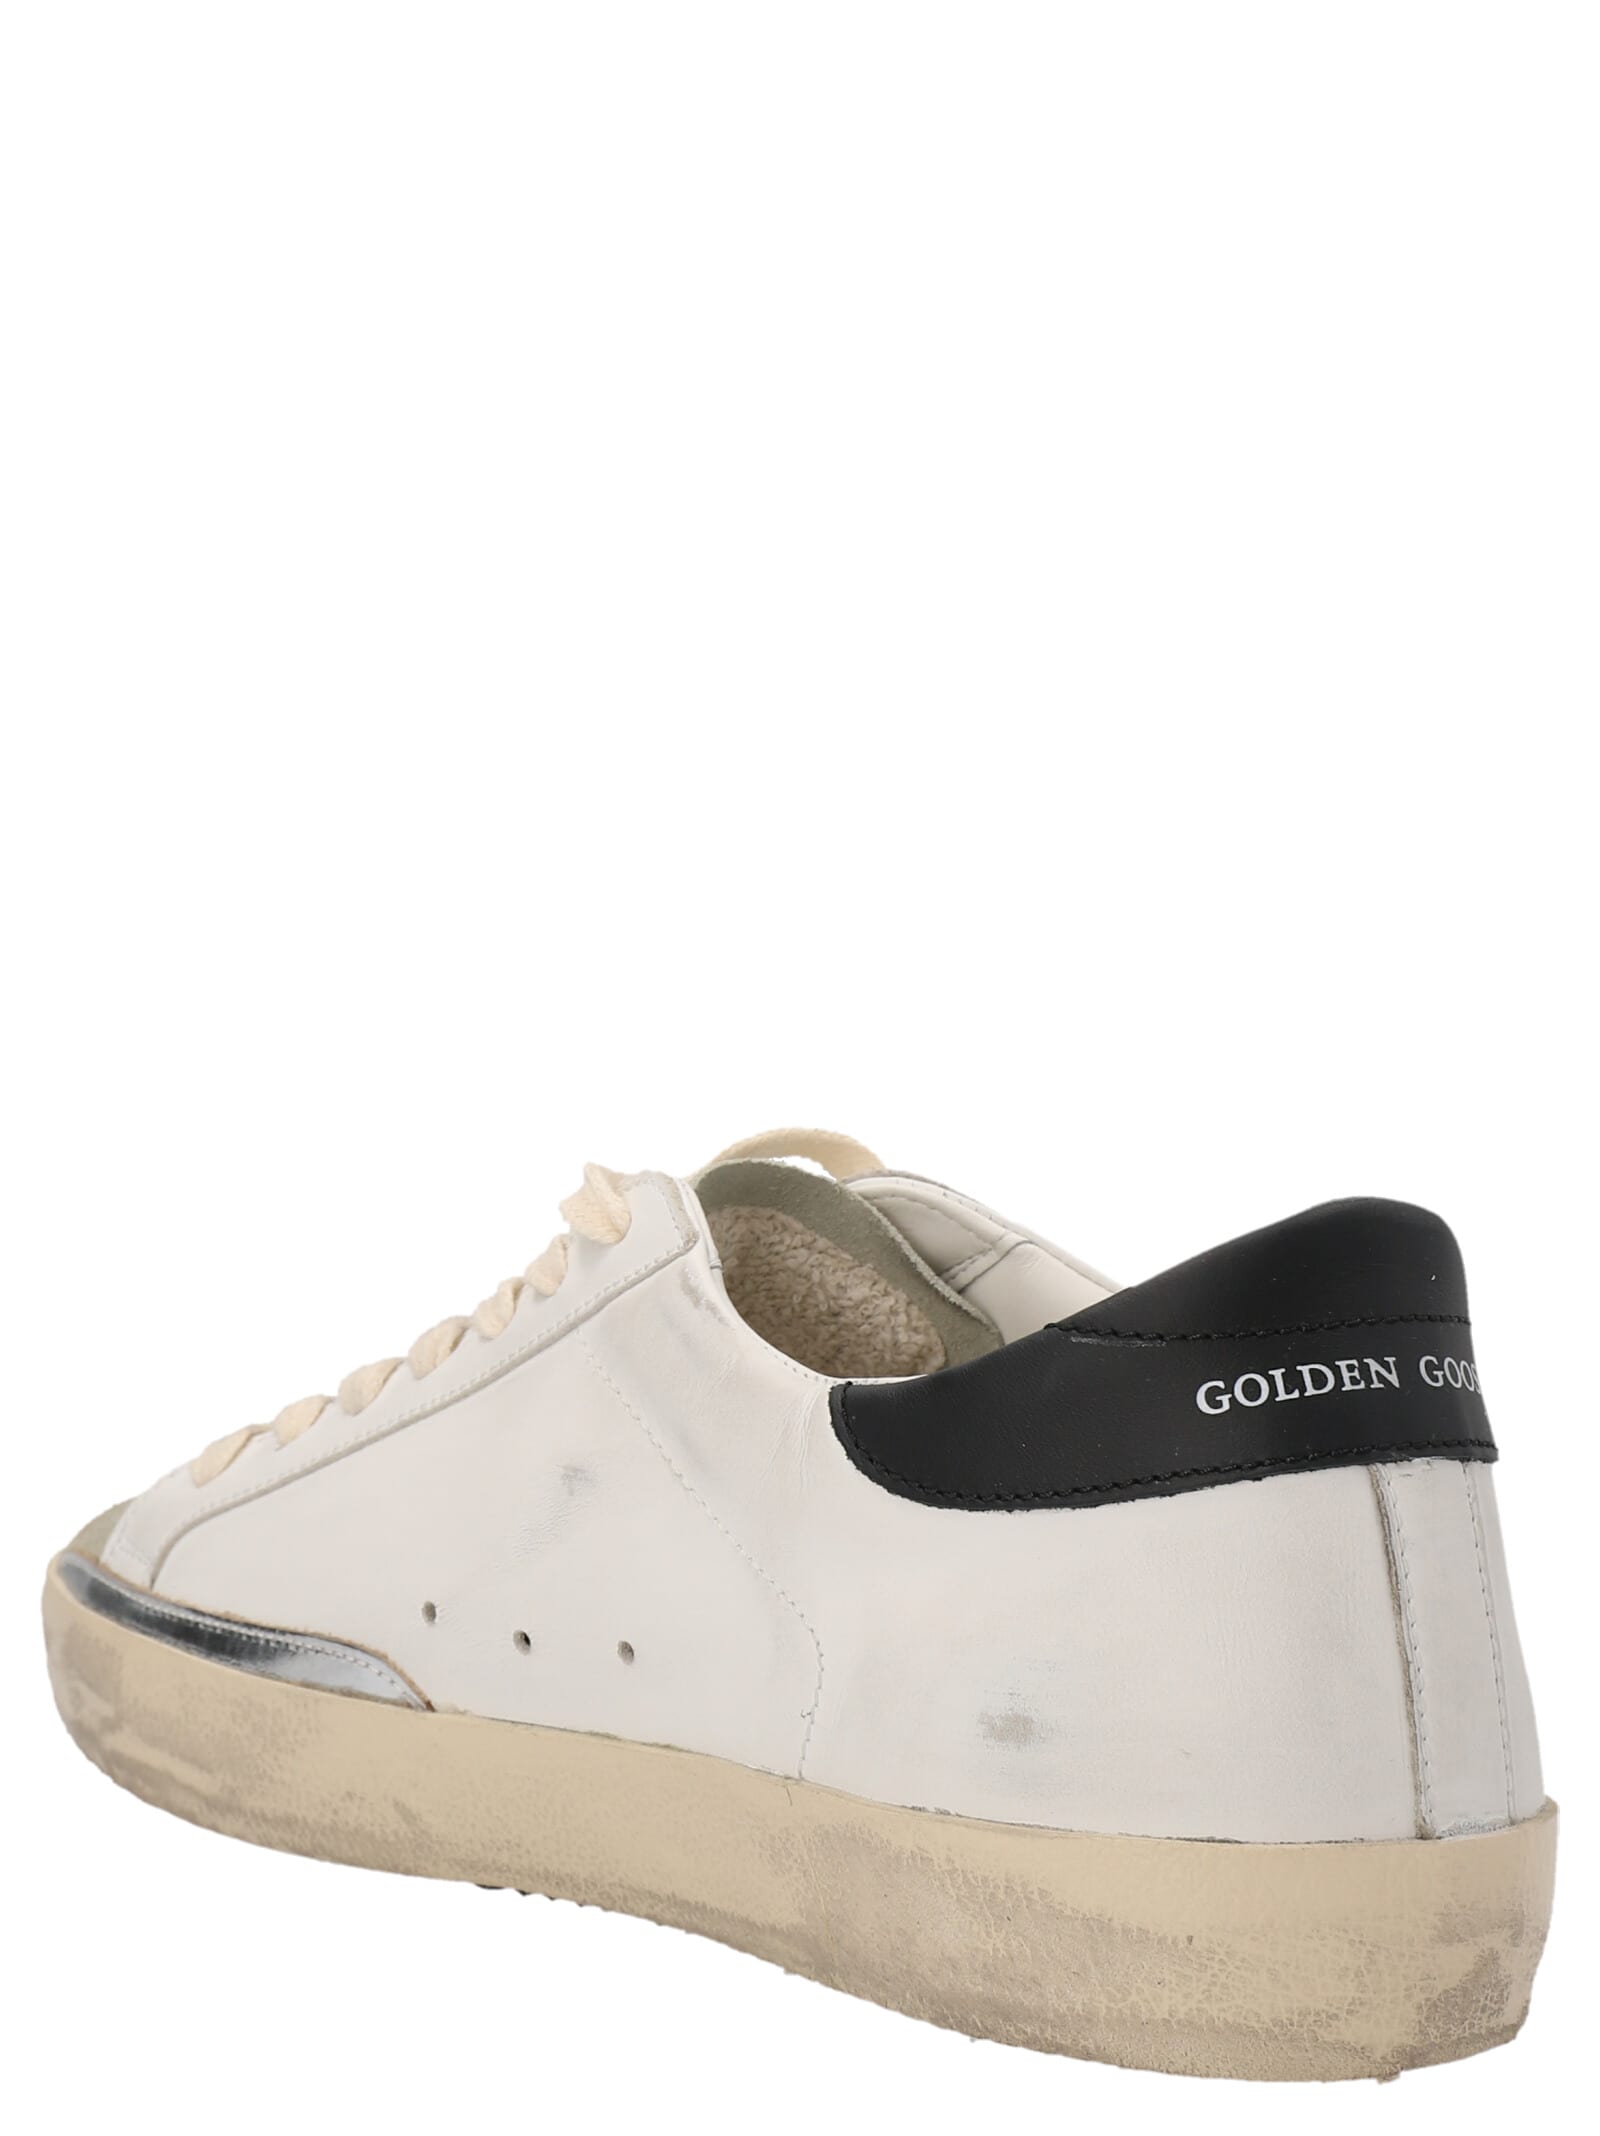 Shop Golden Goose Superstar Sneakers